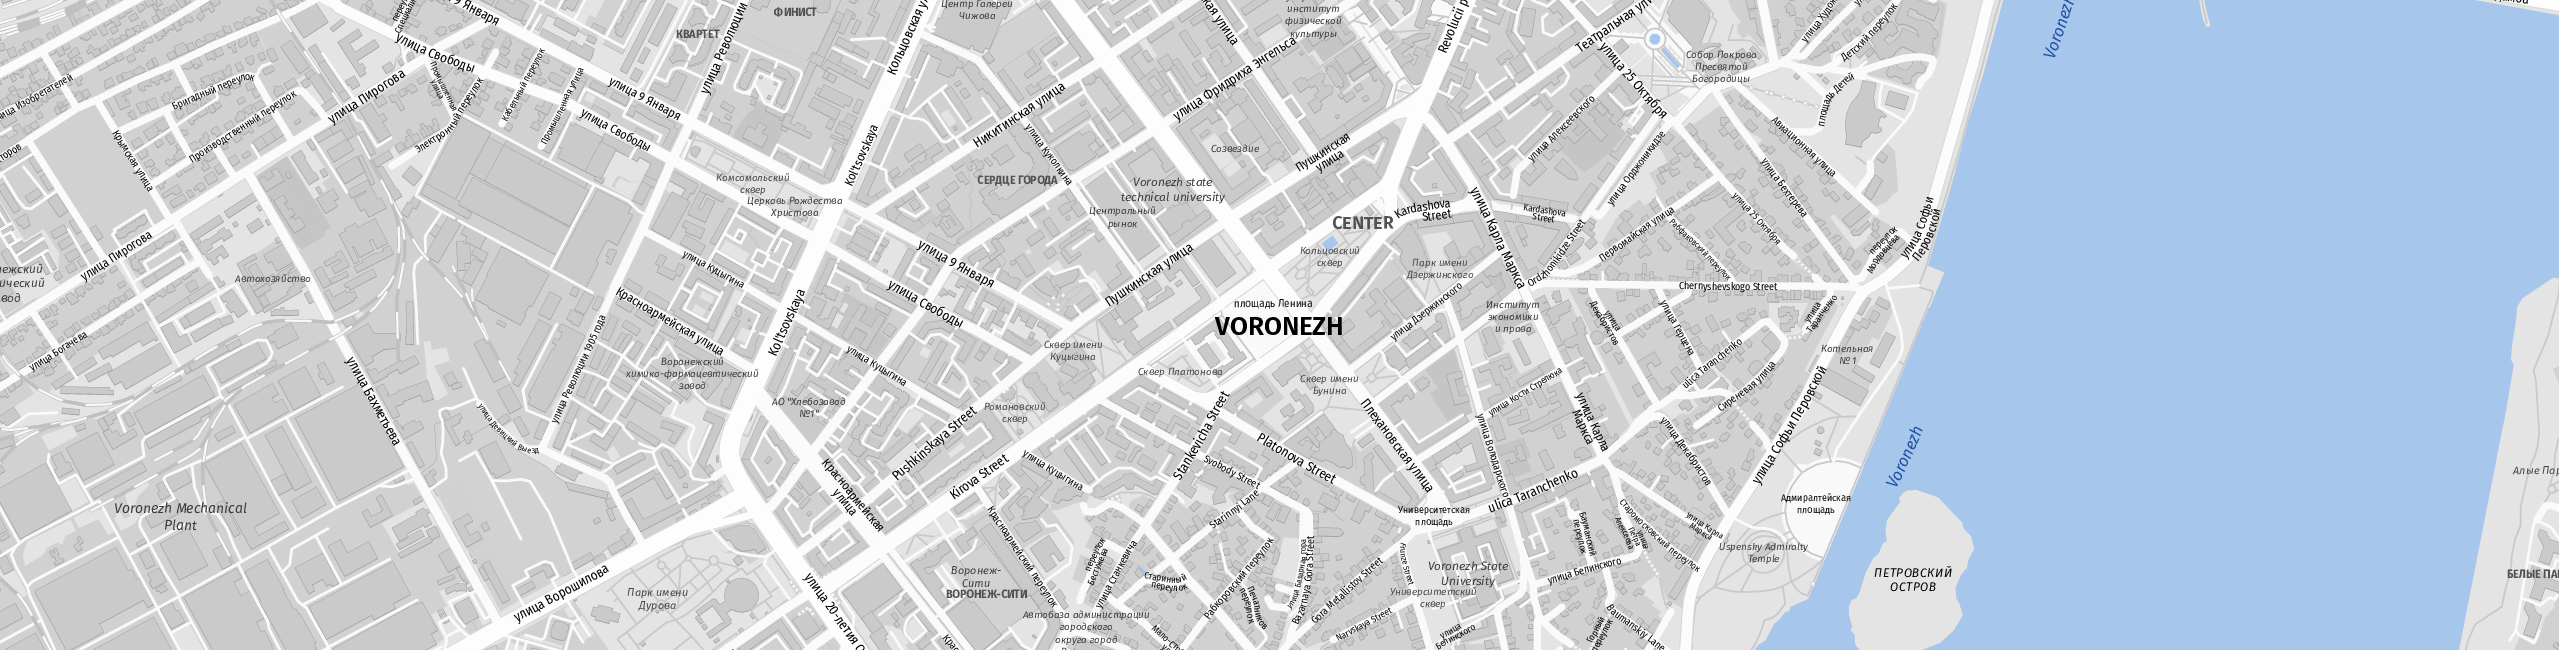 Stadtplan Woronesch zum Downloaden.